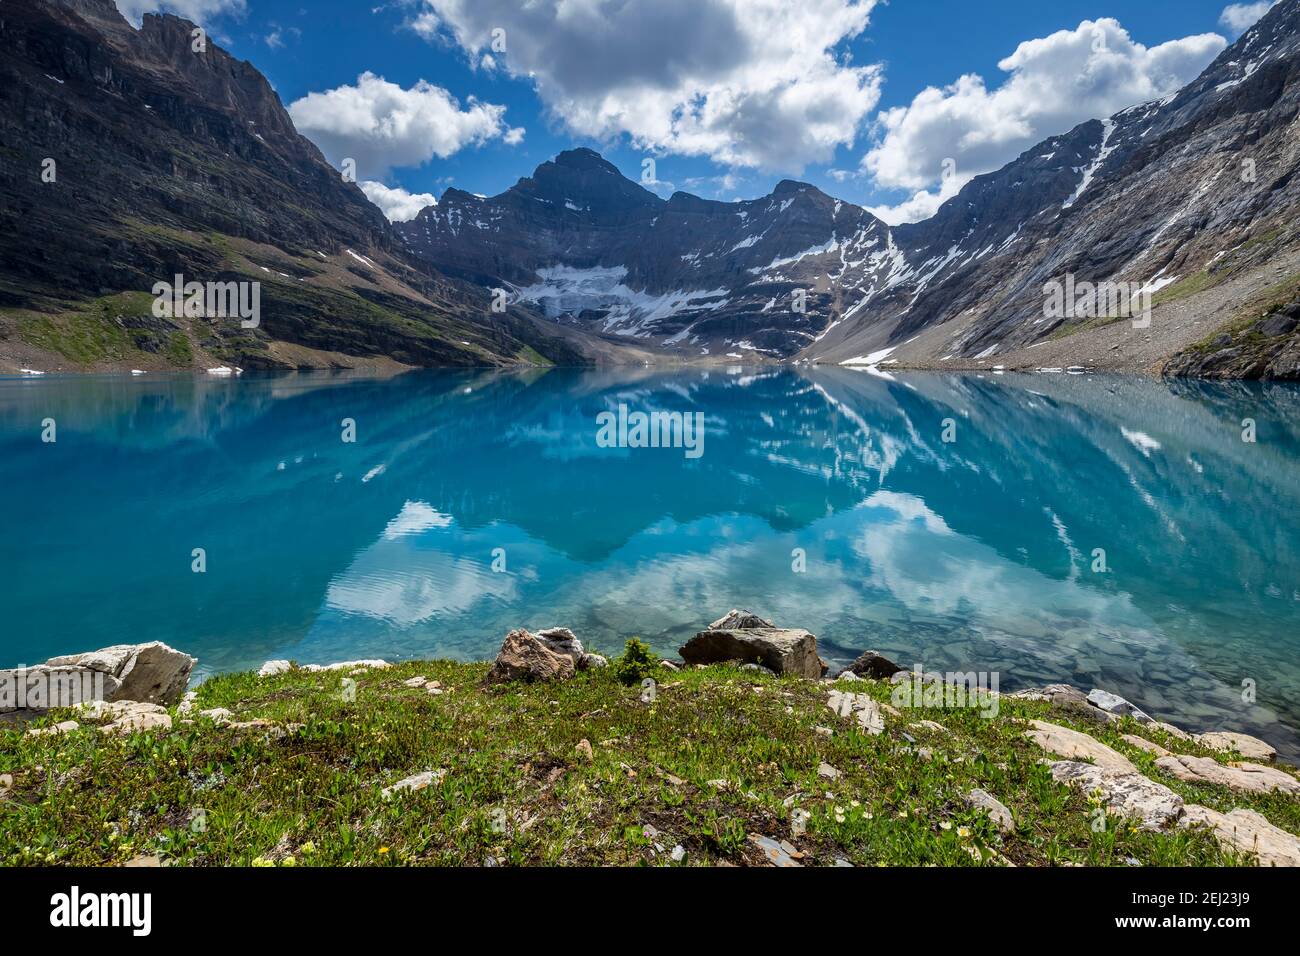 Kanadische Rockies Landschaft eines blauen Sees von Bergen unter einem blauen Himmel mit Wolken im Sommer umgeben, British Columbia, Kanada Stockfoto